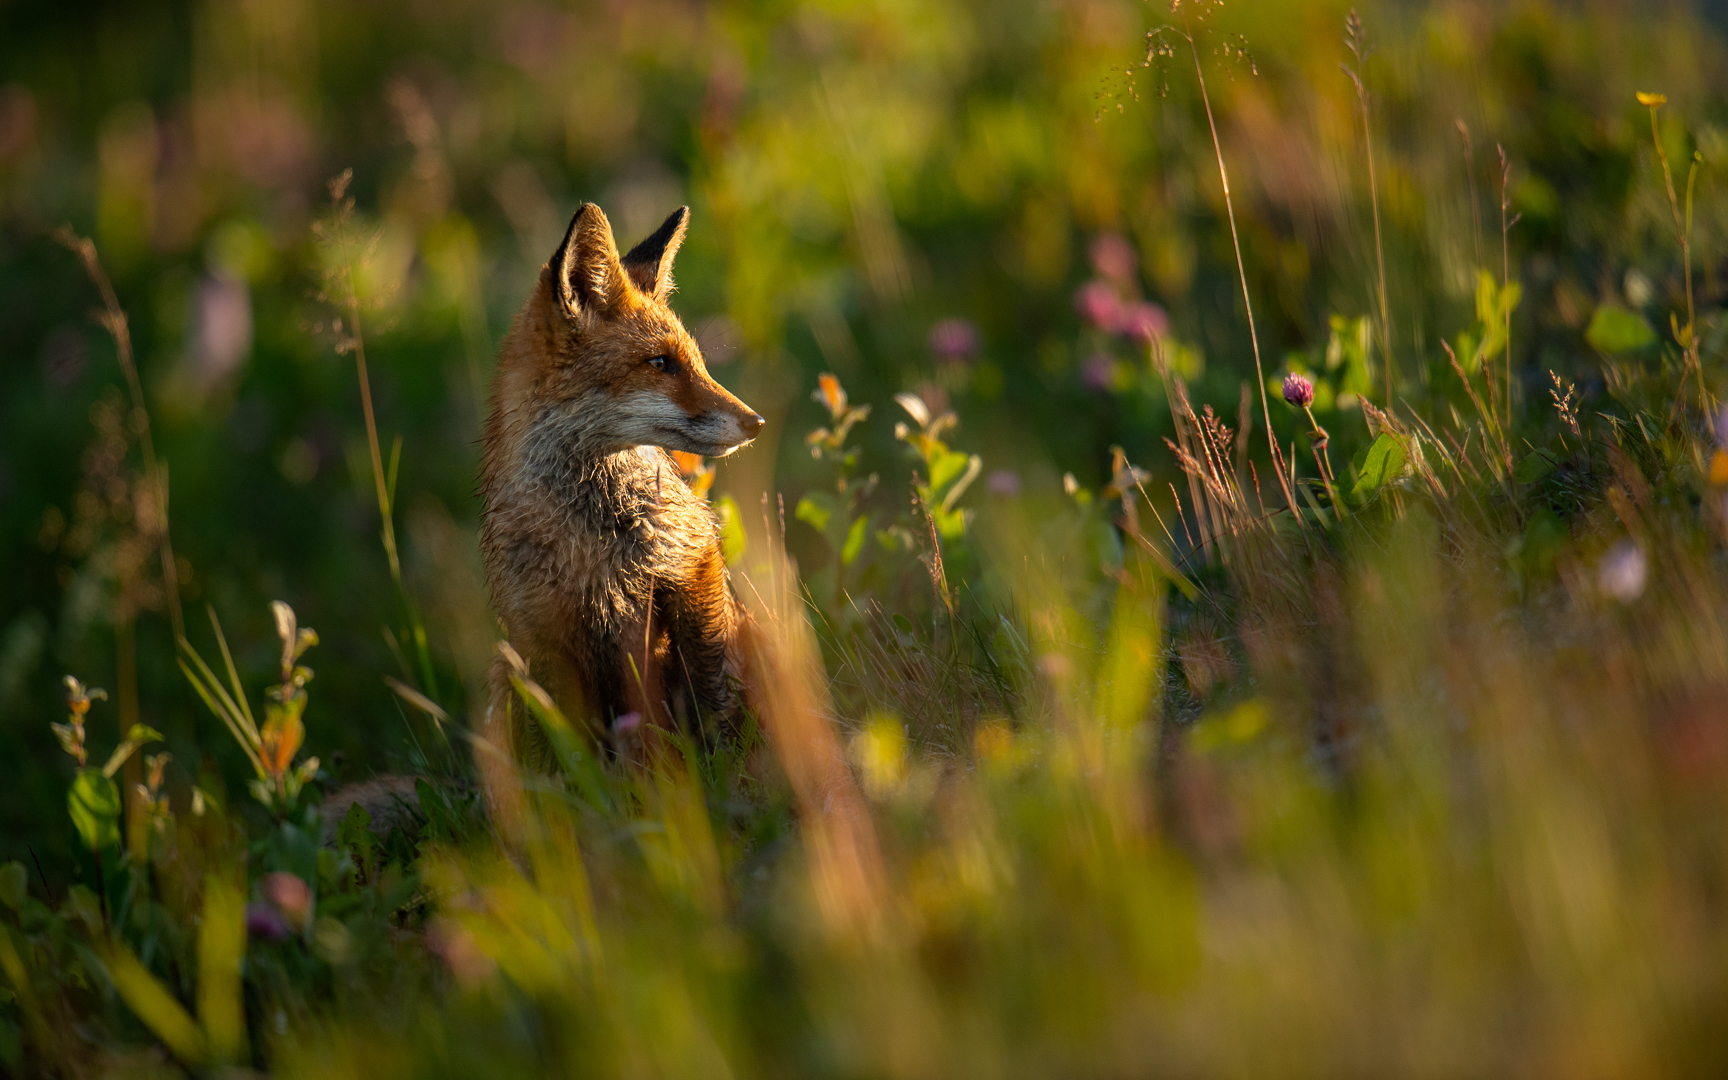 Young fox in the grass, Gaute Frøystein